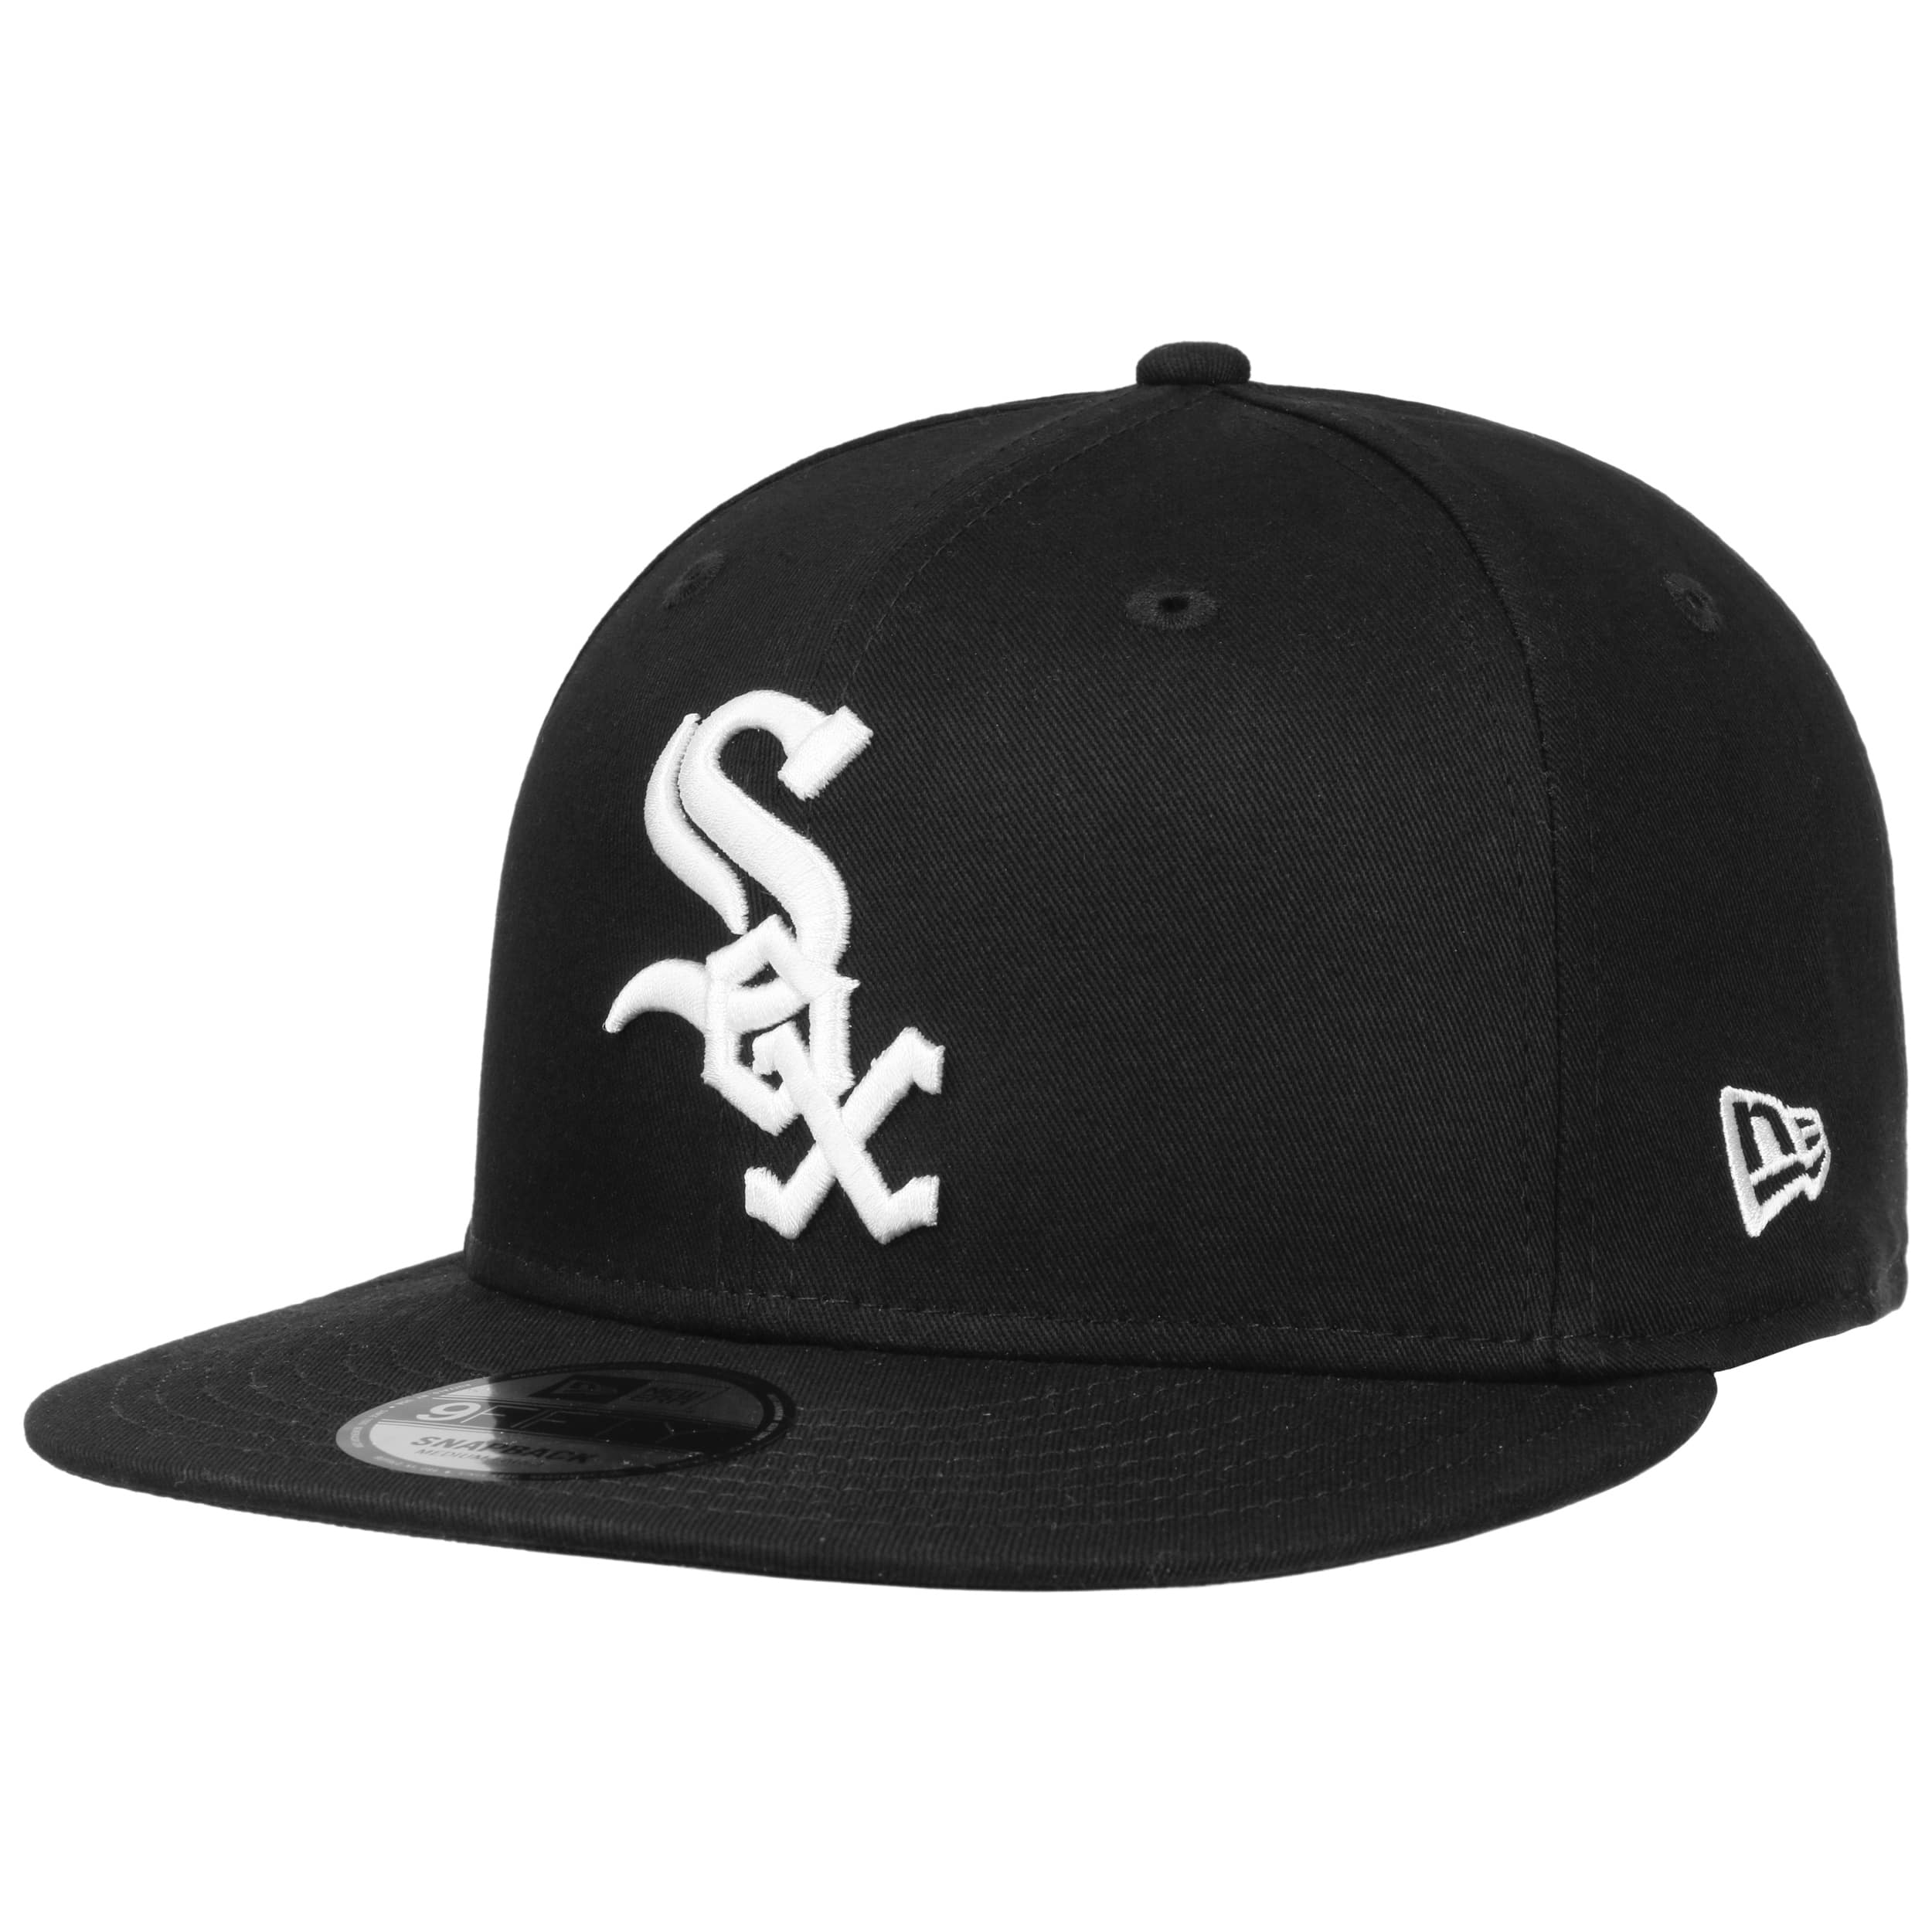 New Era Chicago White Sox MLB 9FIFTY Snapback Hat JD Sports